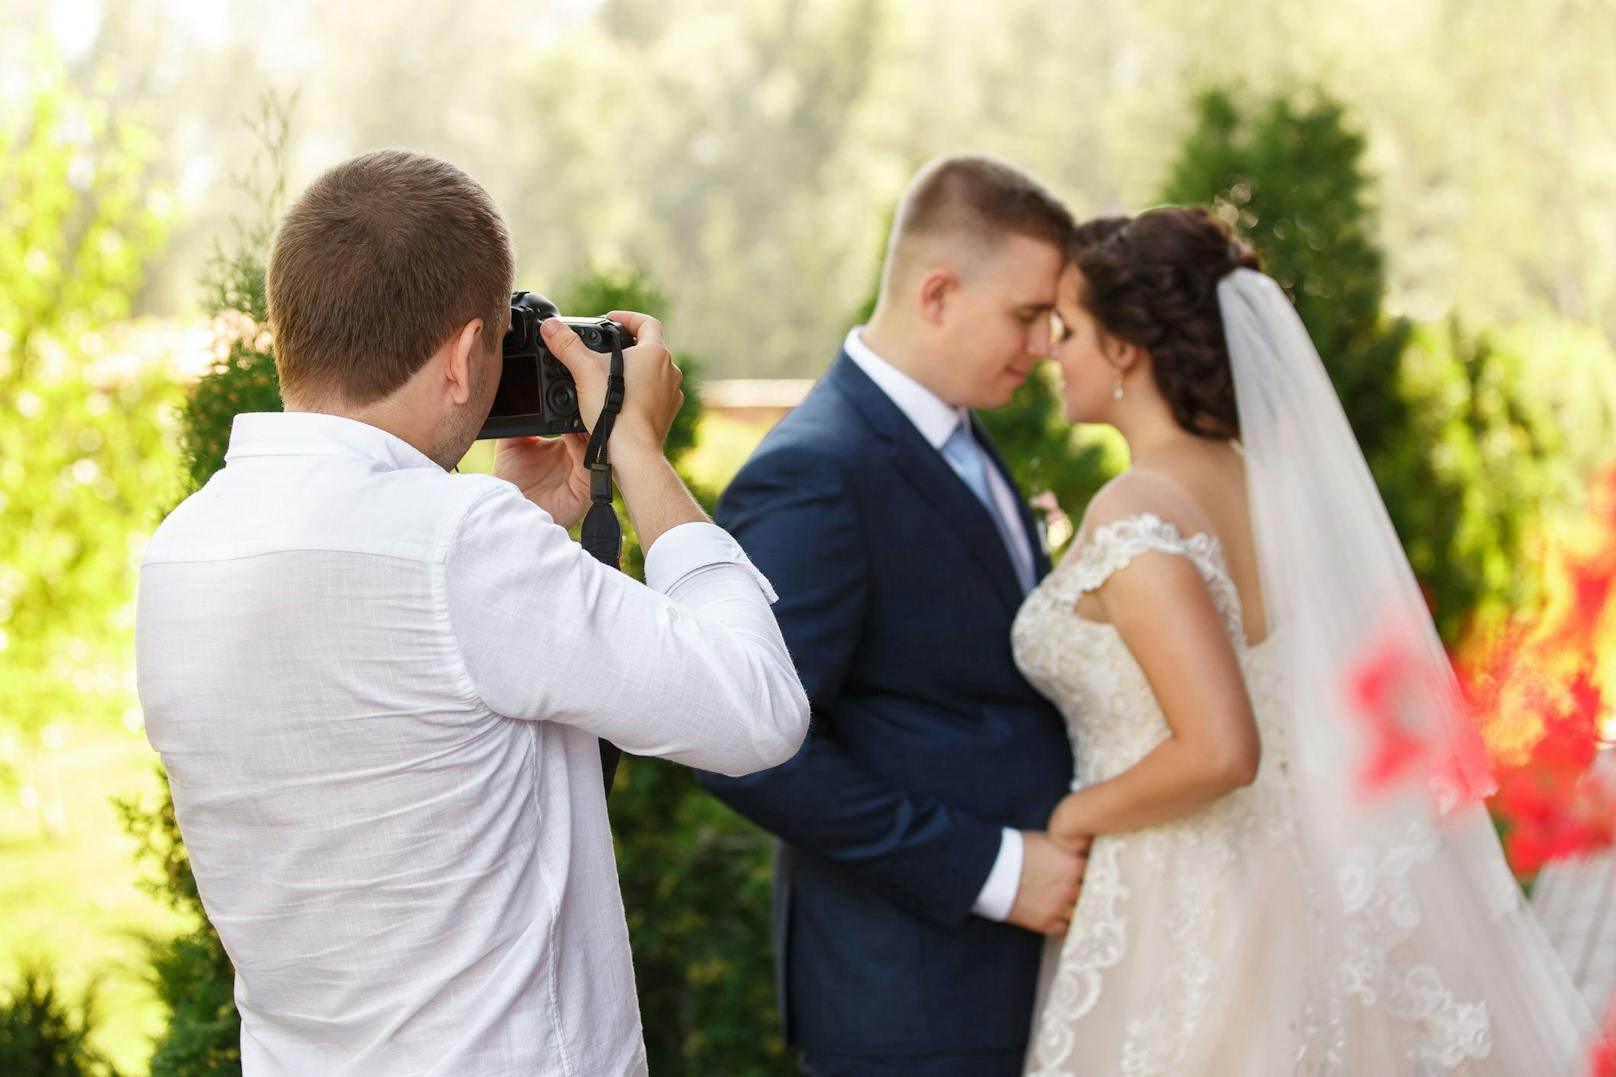 Die Dreistigkeit des geizigen Bräutigam ließ den Hochzeitsfotografen auszucken. Symbolbild